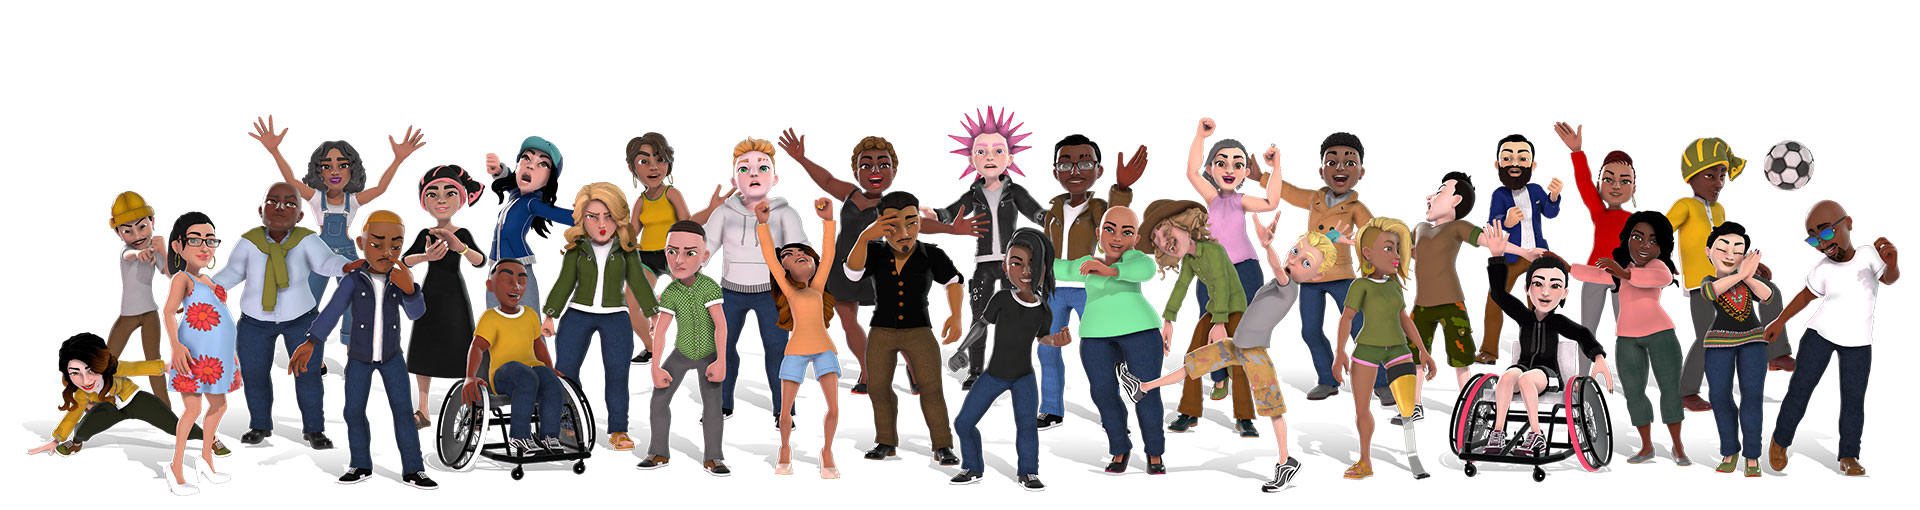 Farklı kıyafetler giymiş şekilde, çeşitliliğe sahip bir grup insanı gösteren Xbox avatarları